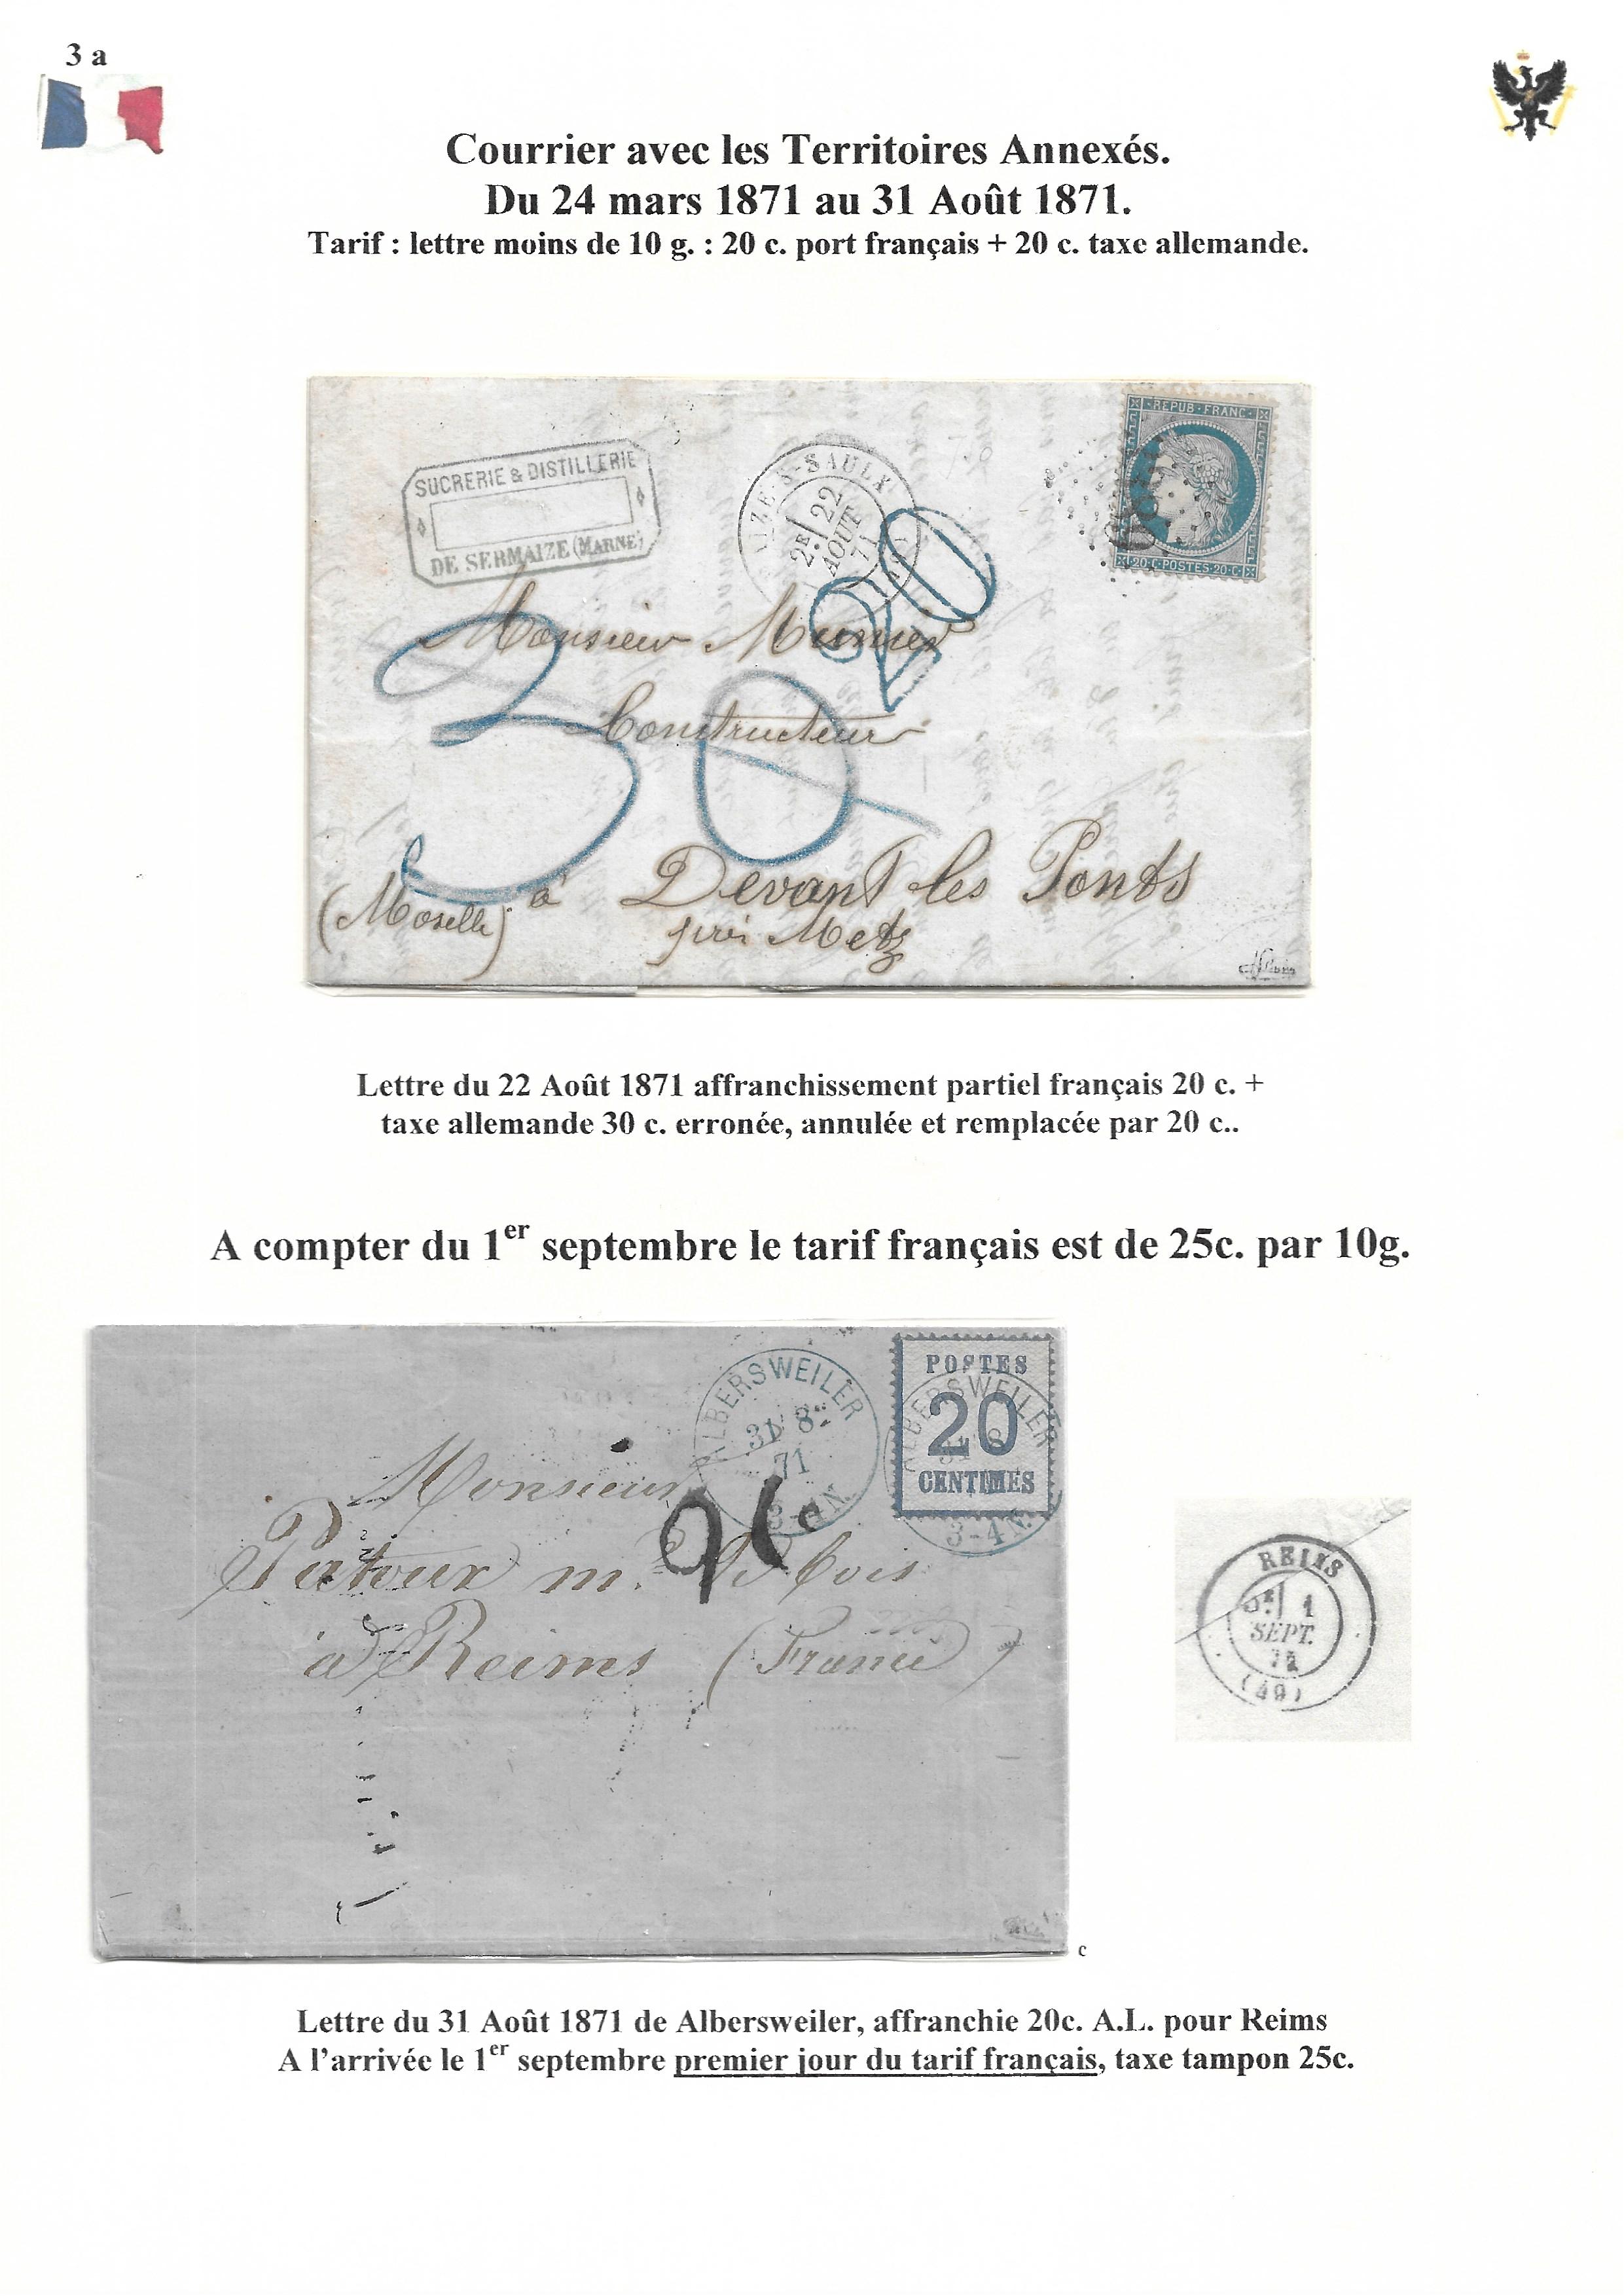 Occupation Prussienne dans la Marne 1870-1872 : Cons��quences sur les relations postales p. 34